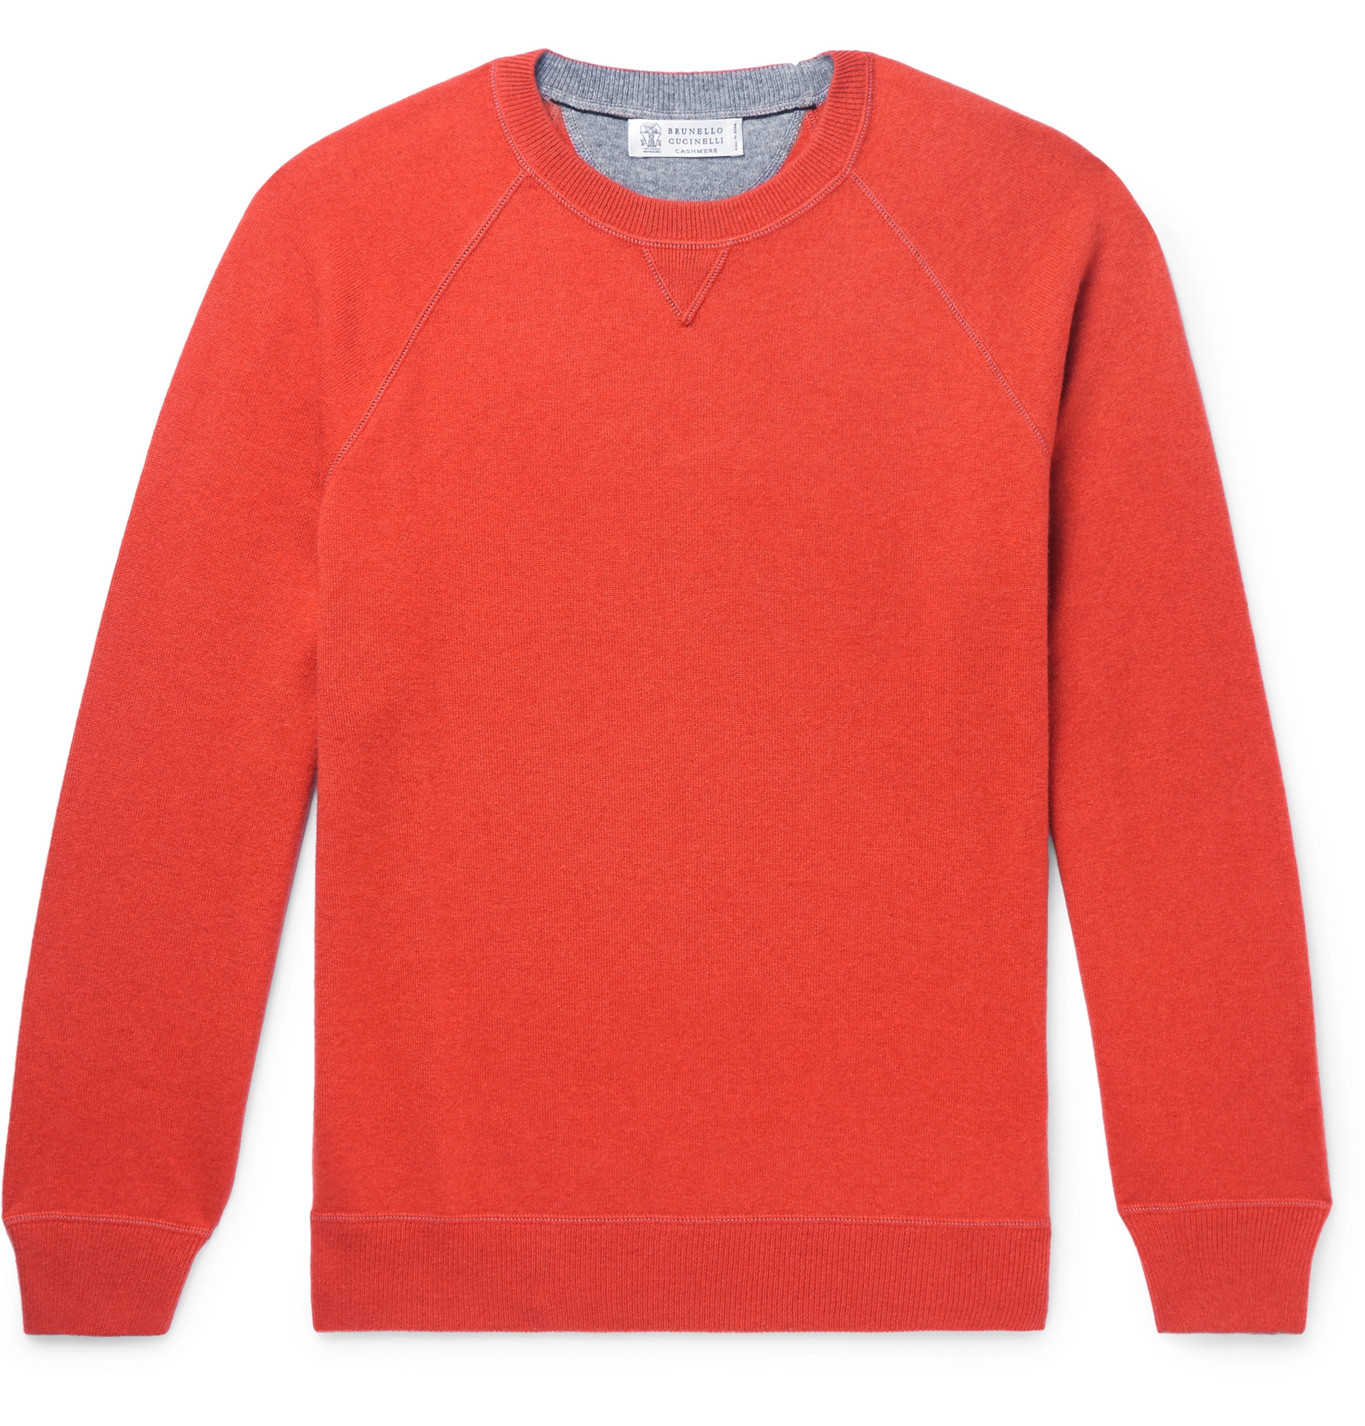 Brunello Cucinelli - Cashmere Sweater - Men - Orange | The Fashionisto